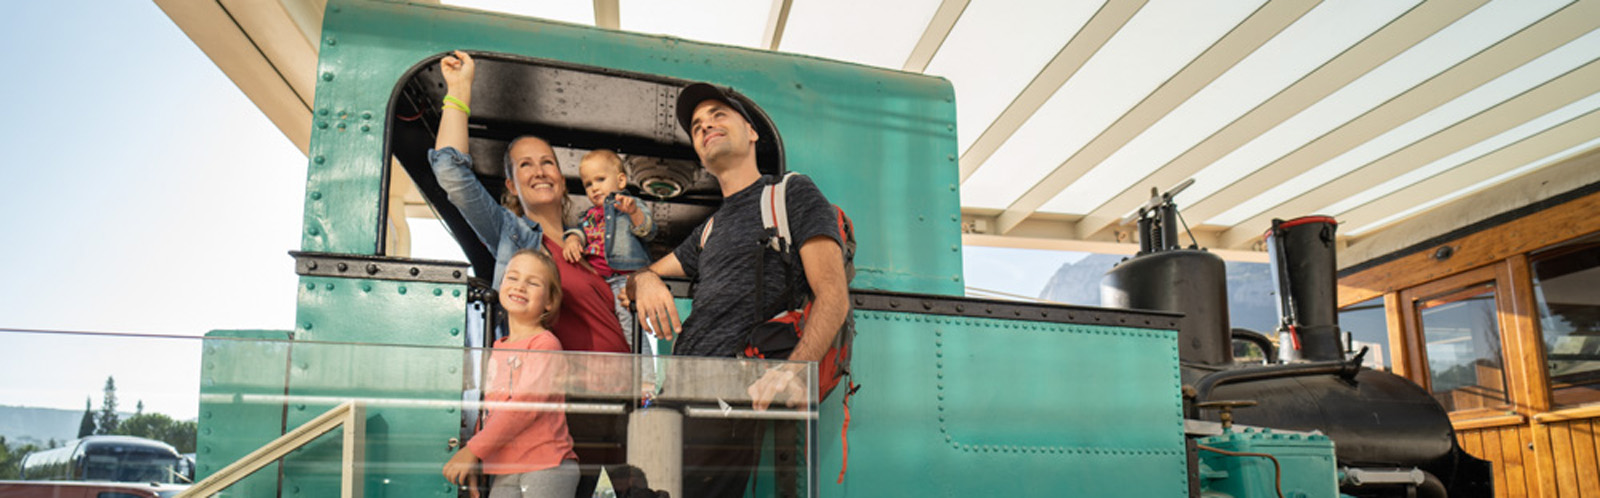 Una família en un dels trens / Una familia en uno de los trenes